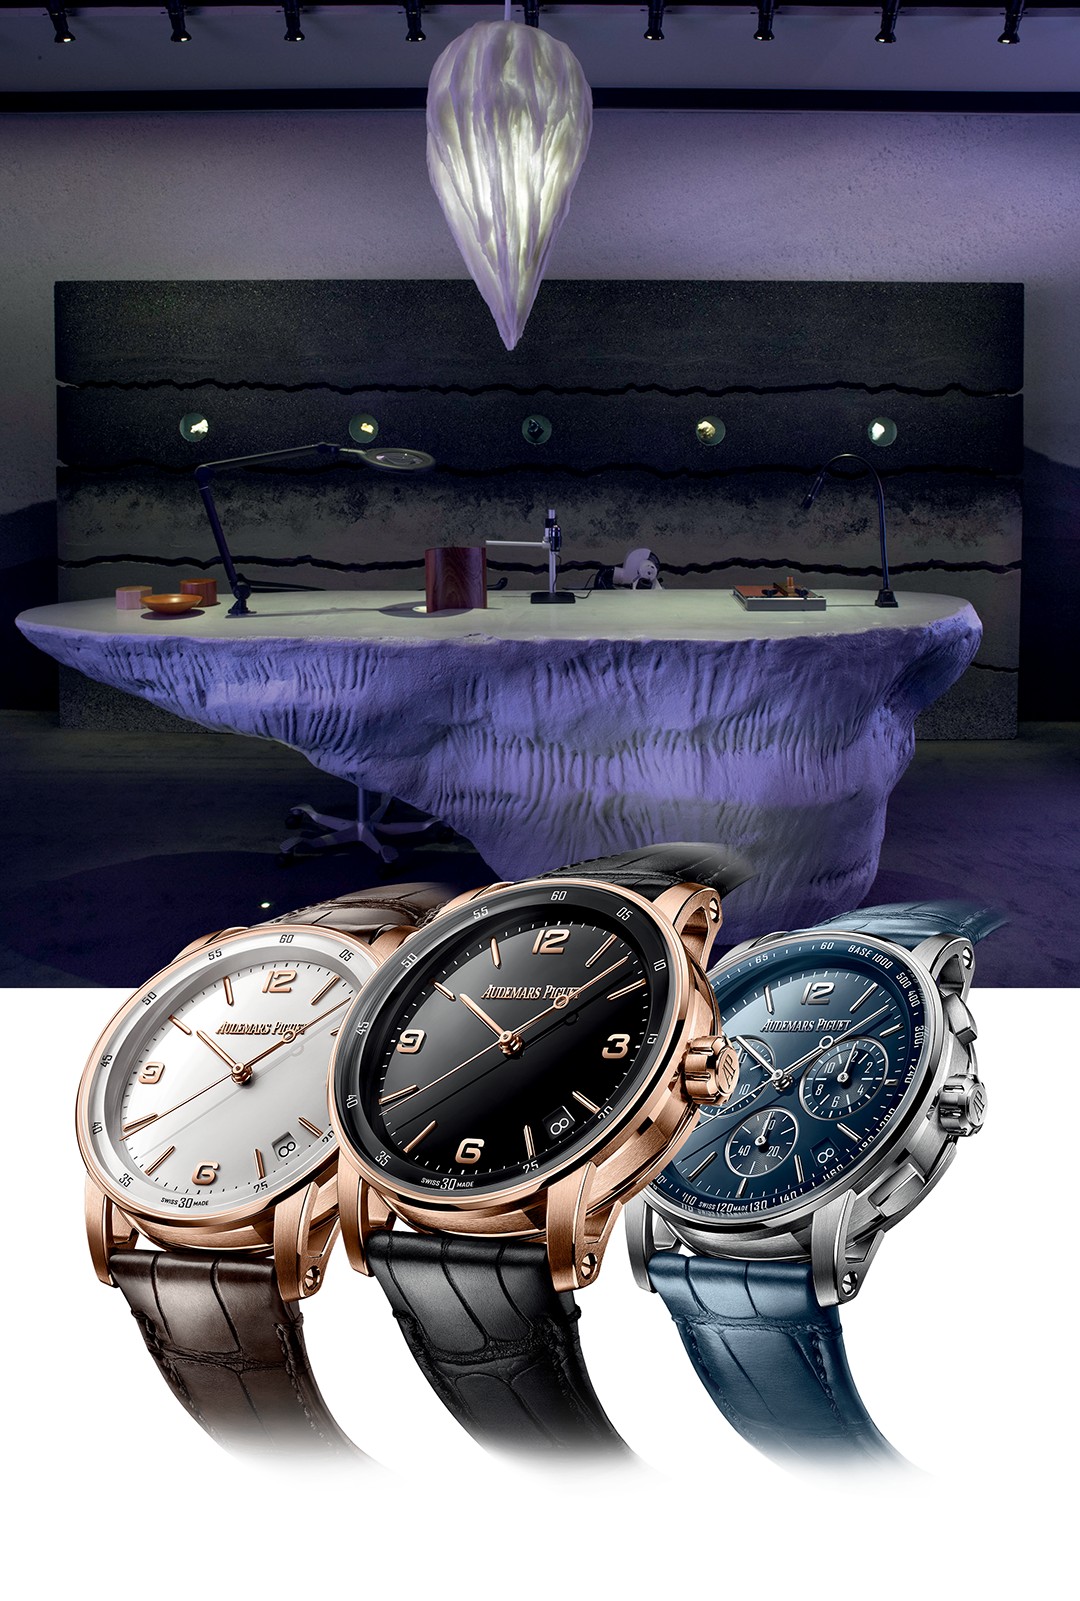 Audemars Piguet: A Watchmaker Desk e o lustre inspirado em estalactites projetados pelo artista. Em primeiro plano, os relógios Code 11.59 da marca de alta relojoaria suíça (Foto: divulgação)